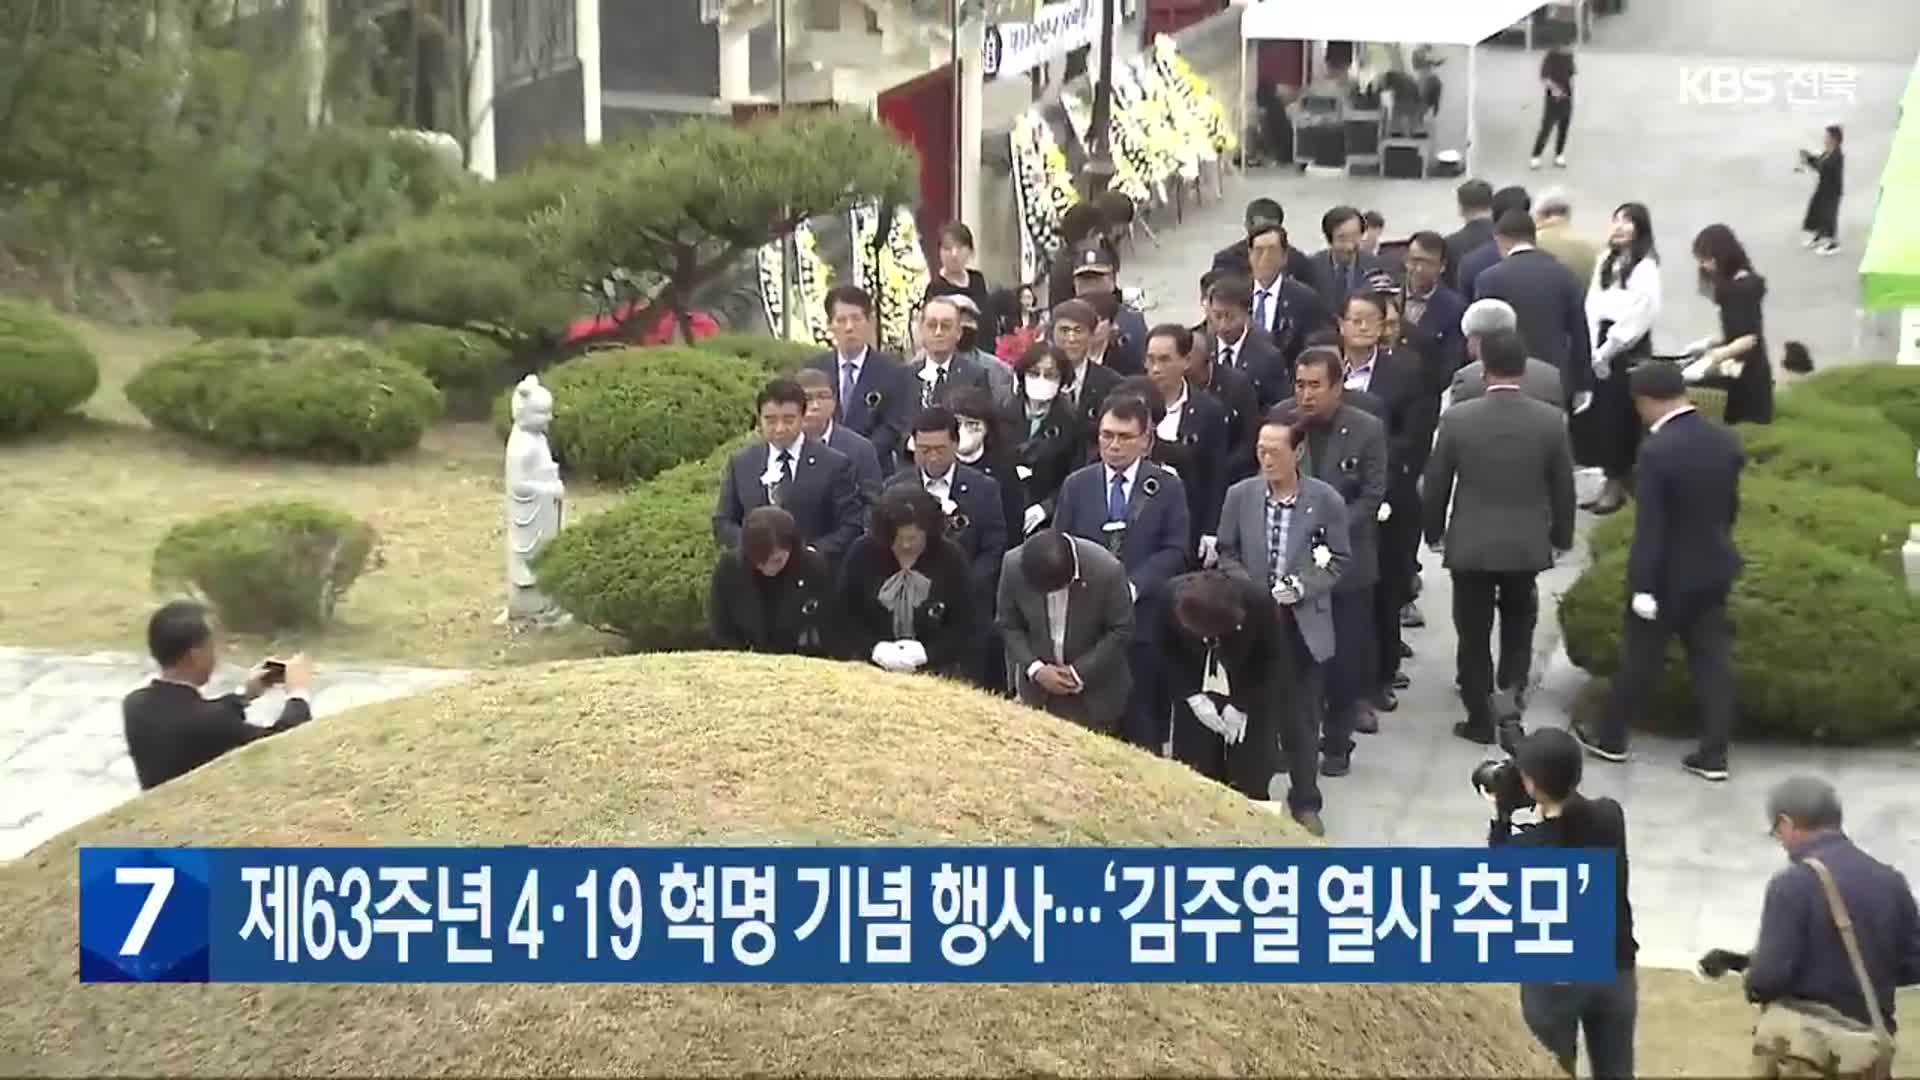 제63주년 4·19 혁명 기념 행사…‘김주열 열사 추모’